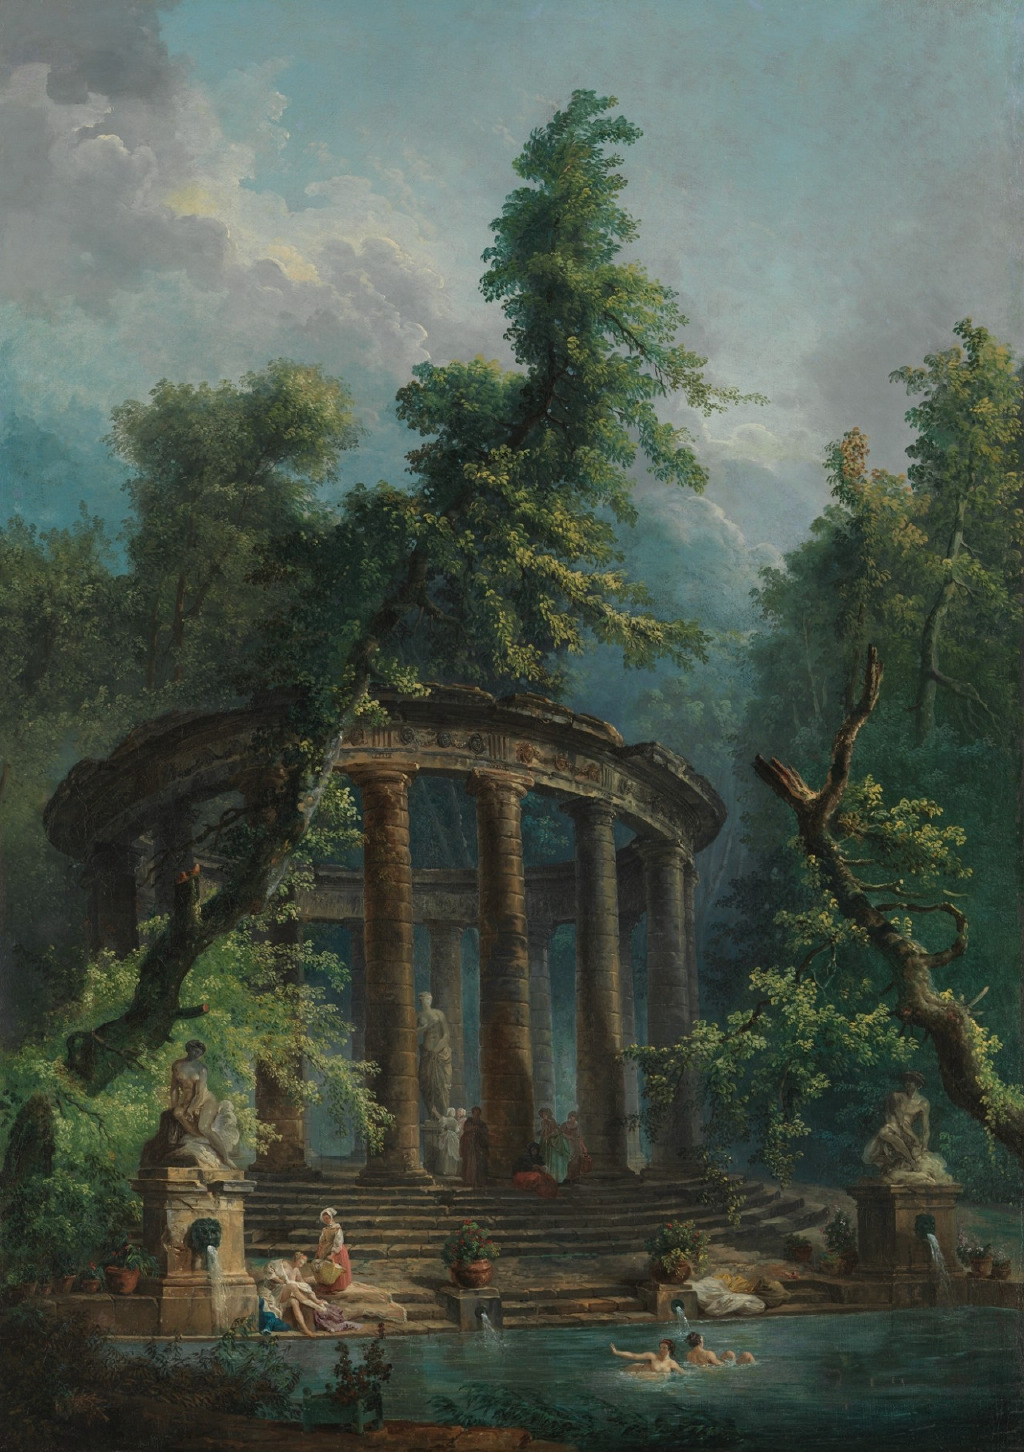 的古代遗迹产生了极大的兴趣,创作了著名的风景画《废墟的吕贝尔》,他